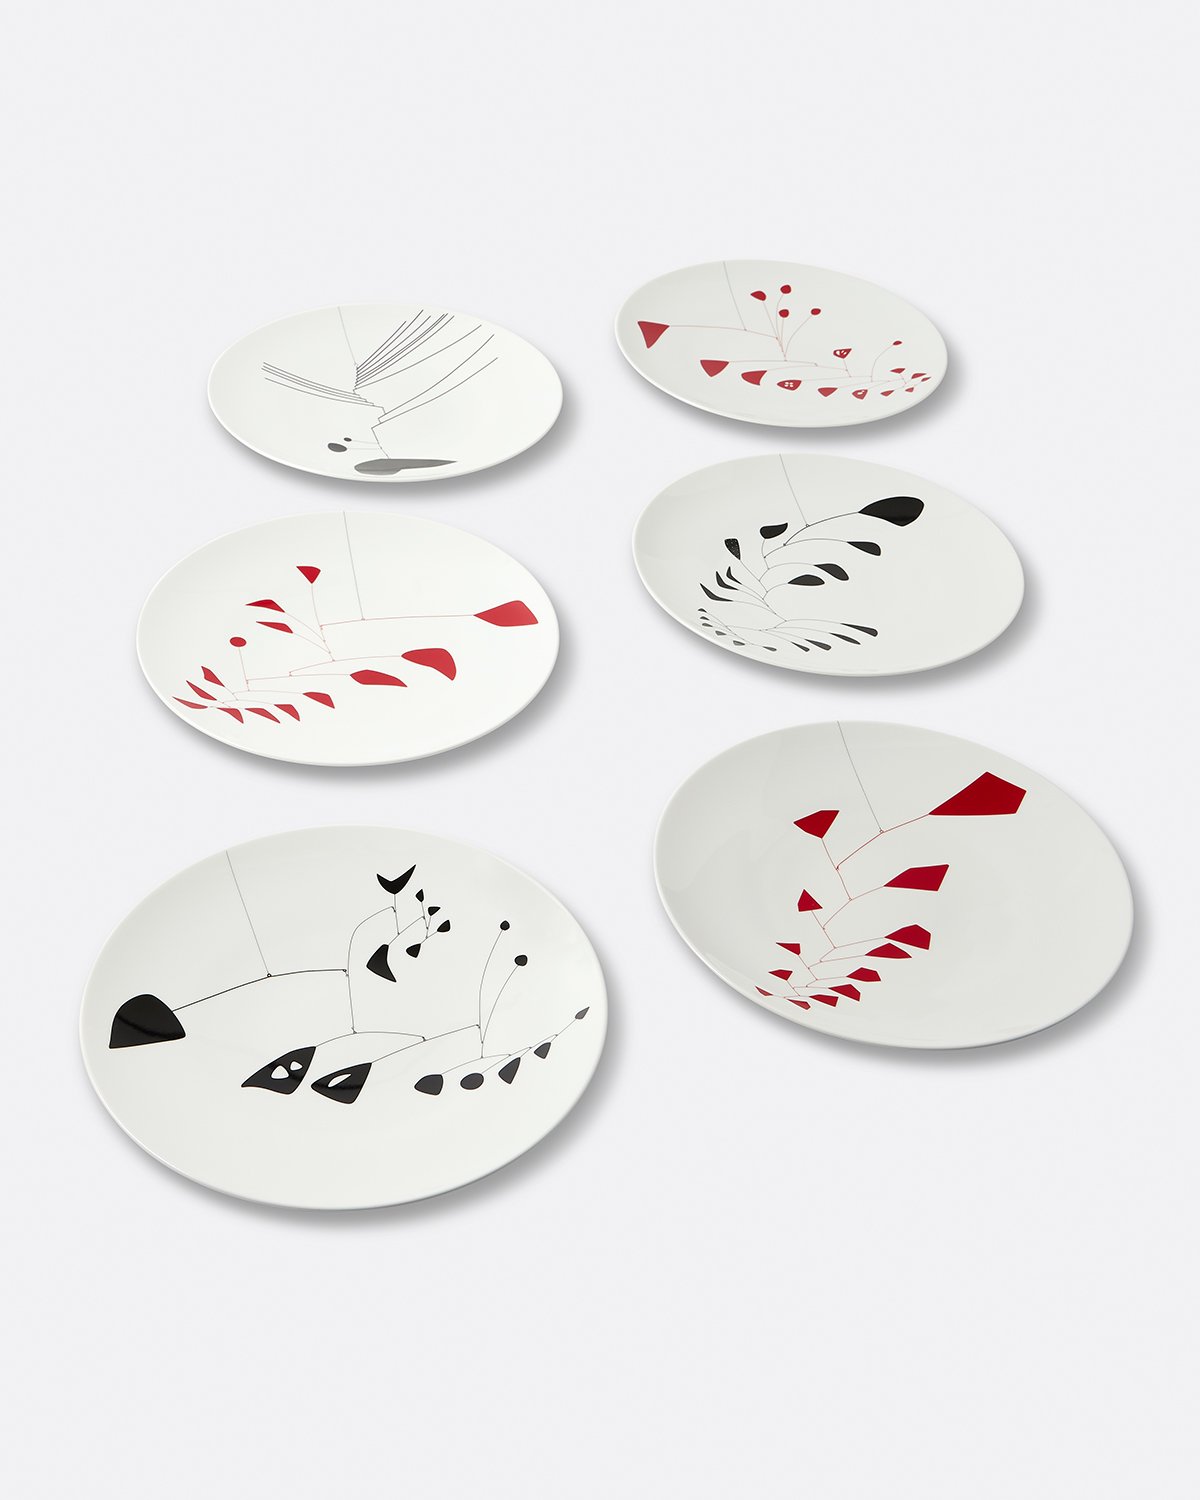 Alexander Calder Set of 6 Plates Default Title